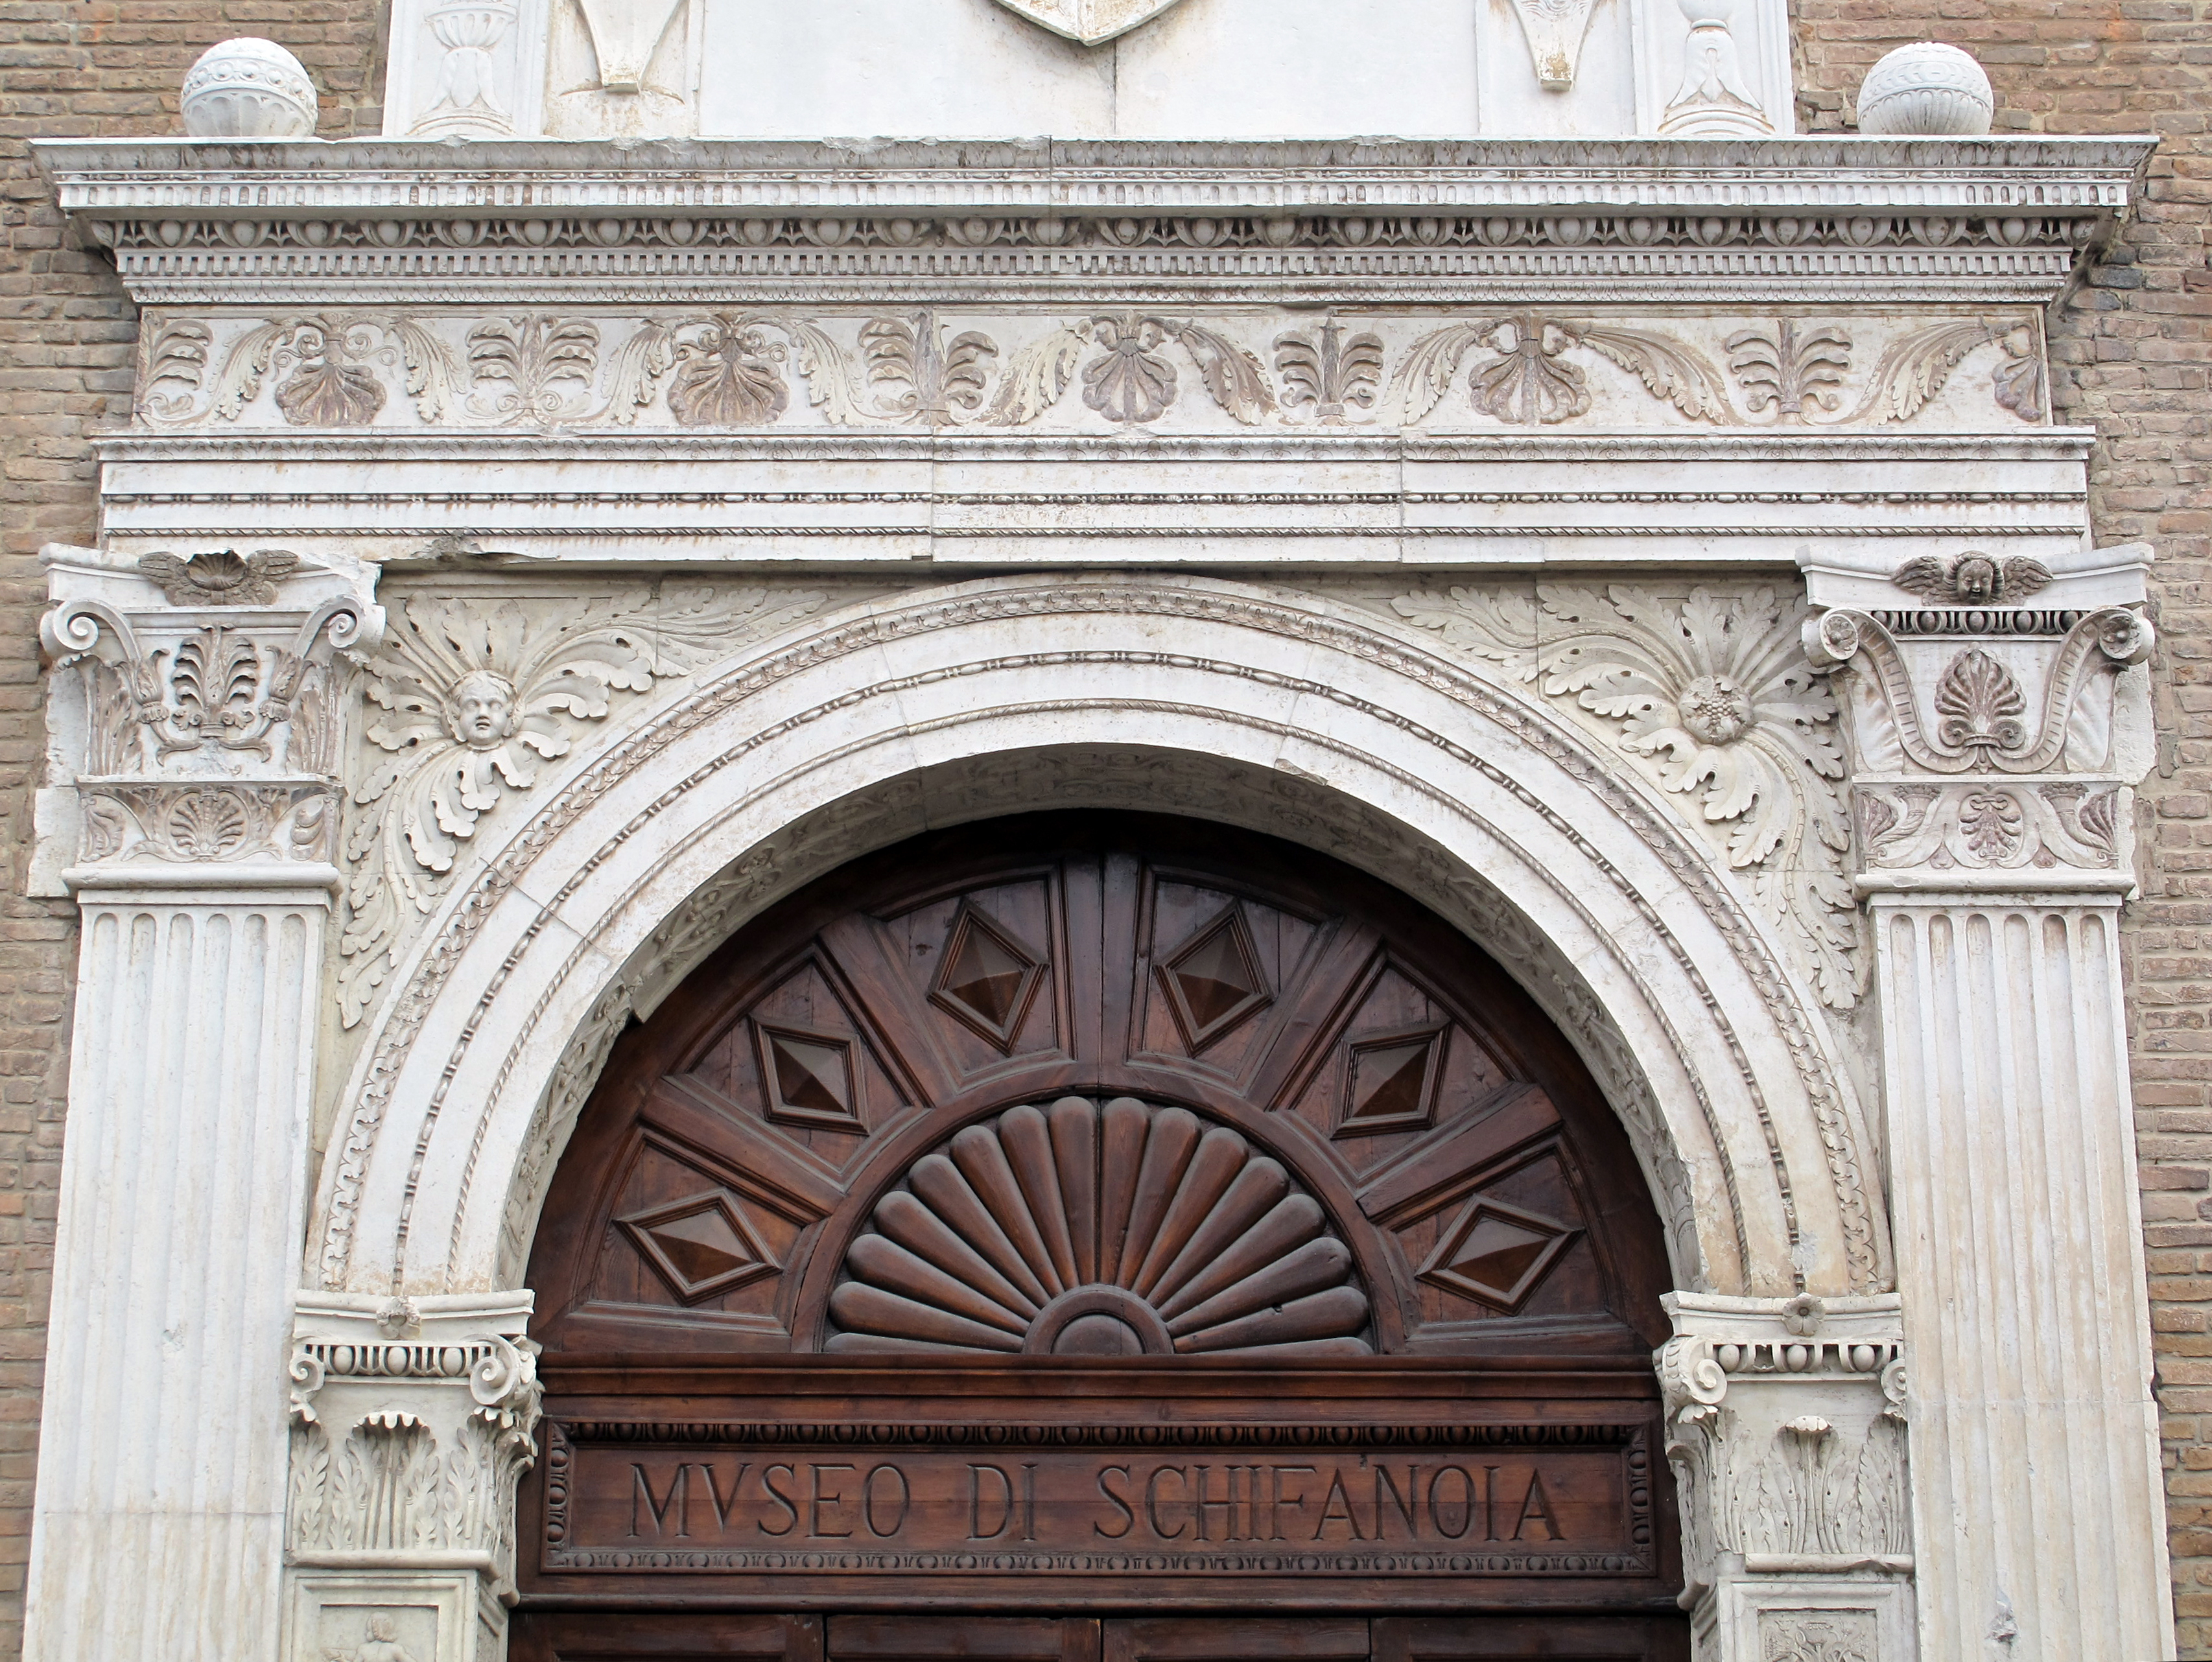 foto: https://upload.wikimedia.org/wikipedia/commons/b/b4/Palazzo_schifanoia%2C_ext.%2C_portale_maggiore_04.JPG